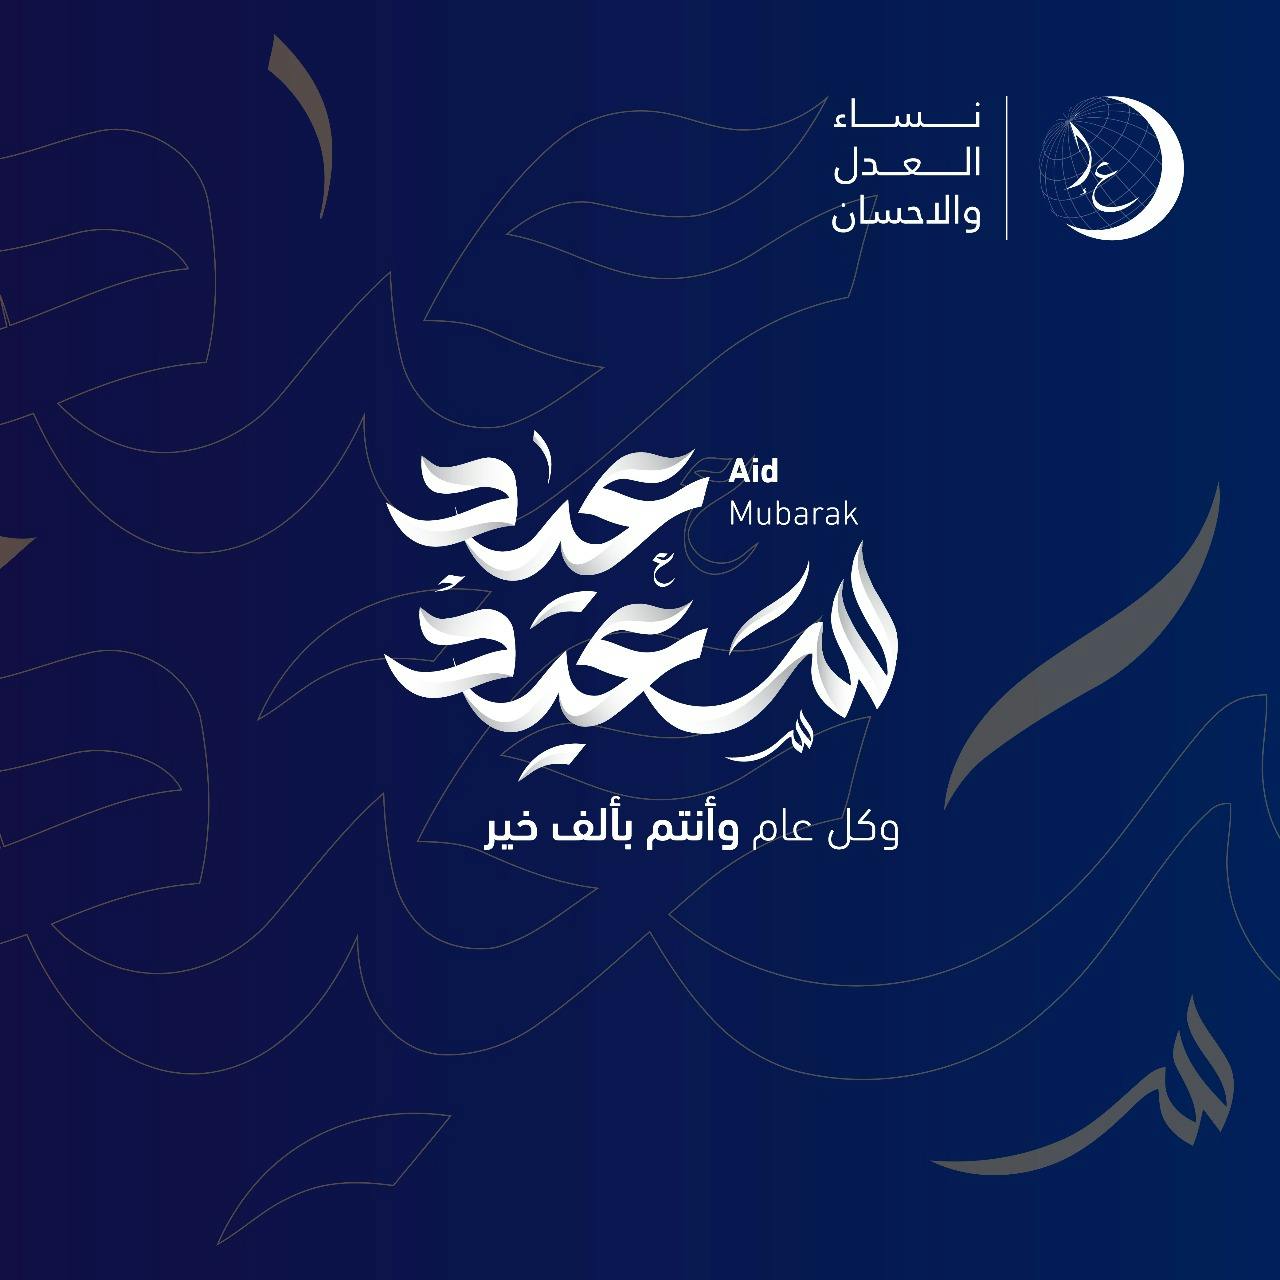 Cover Image for نساء العدل والإحسان يباركن لكم عيد الفطر